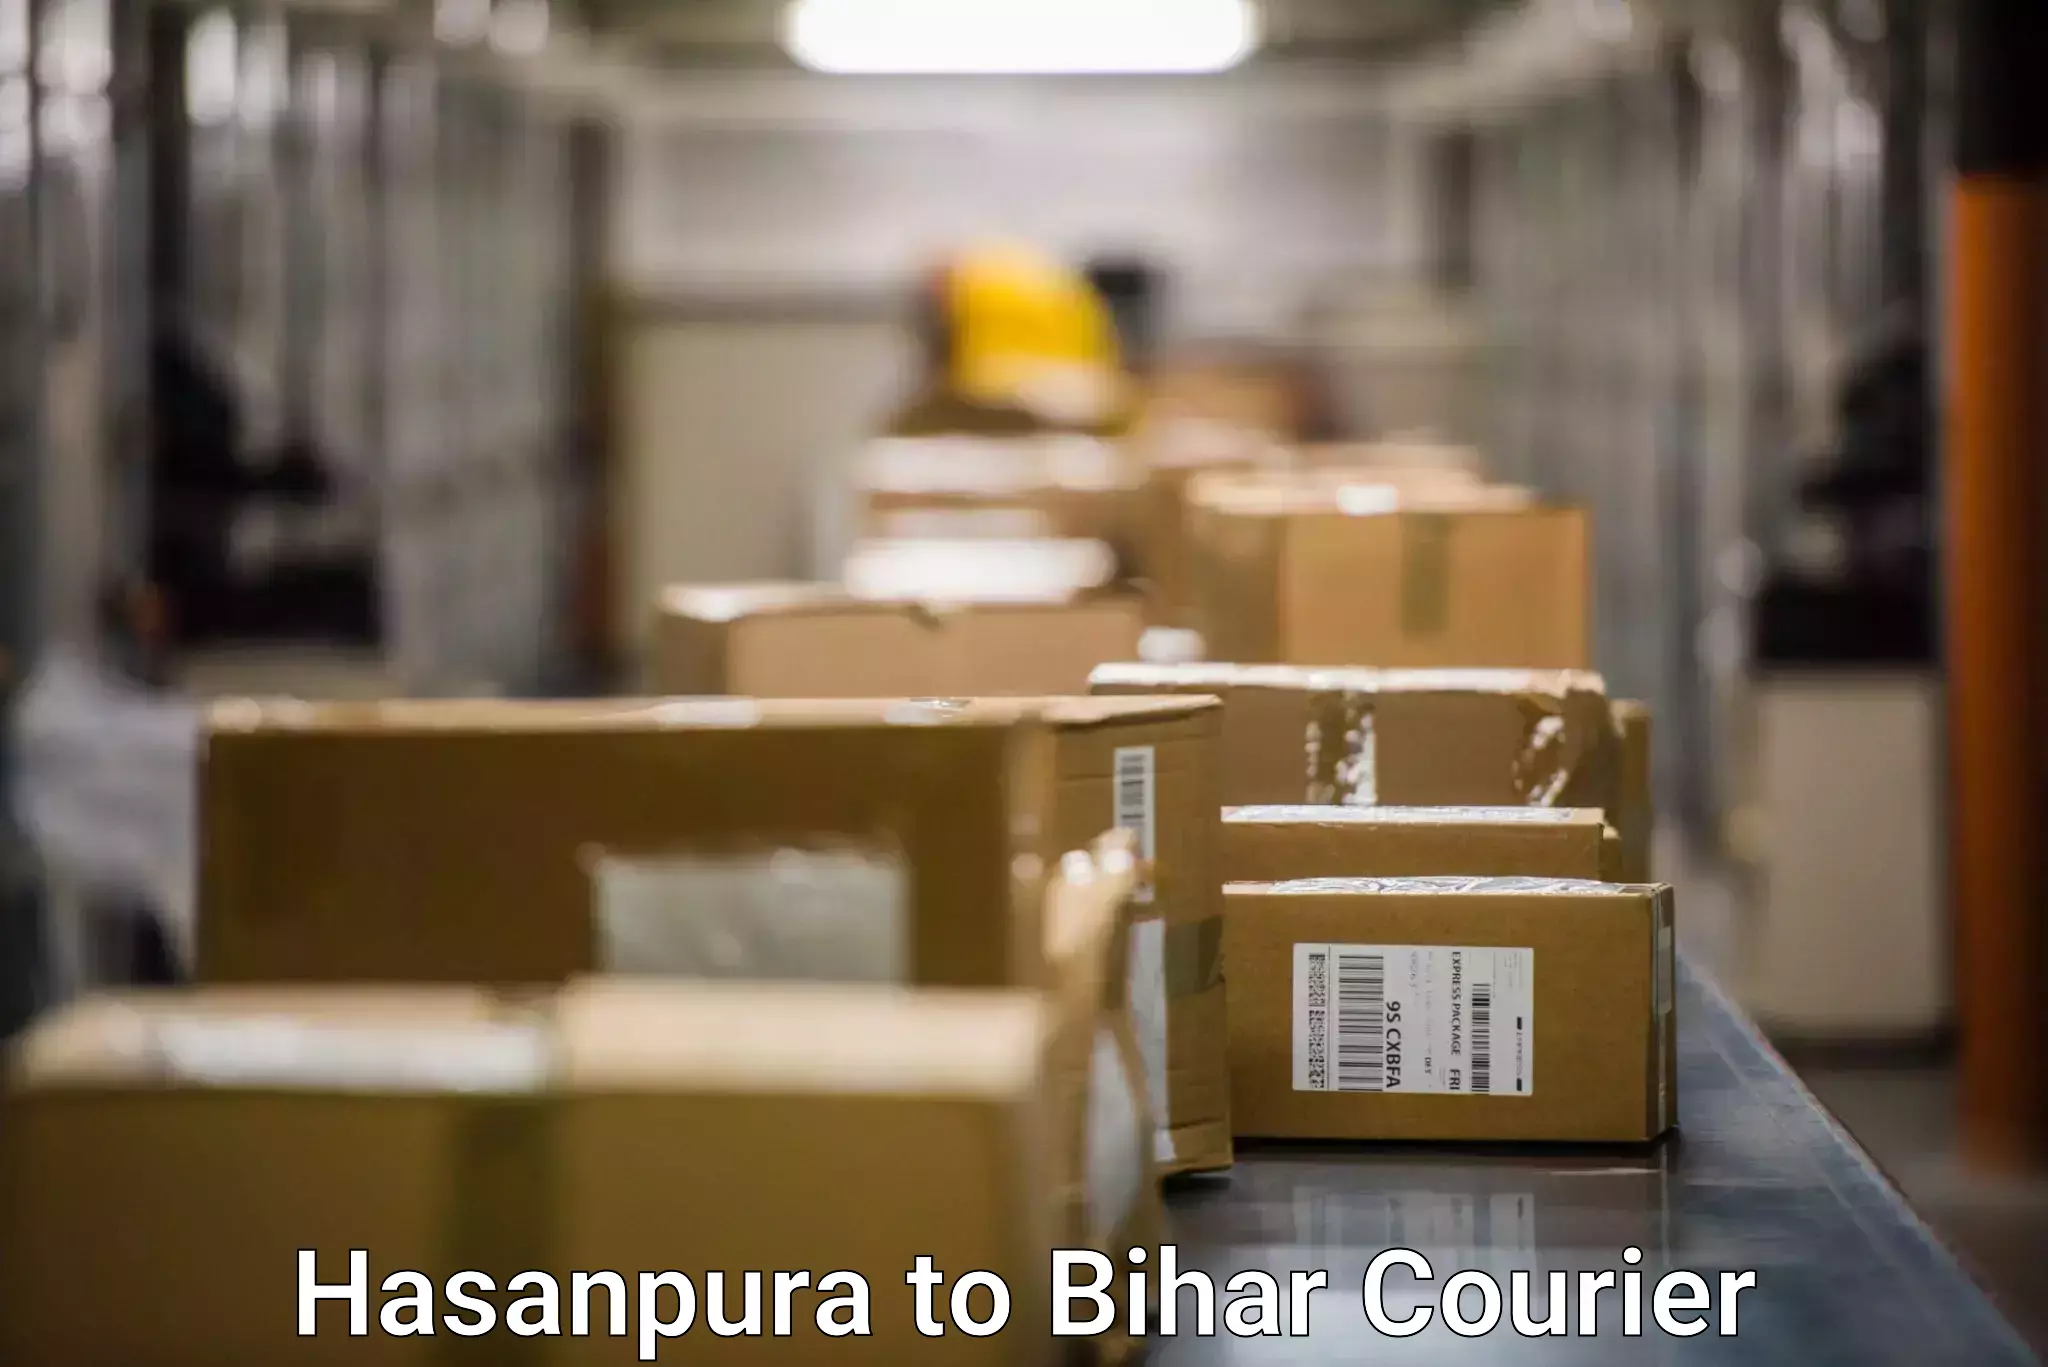 24/7 courier service Hasanpura to Bihar